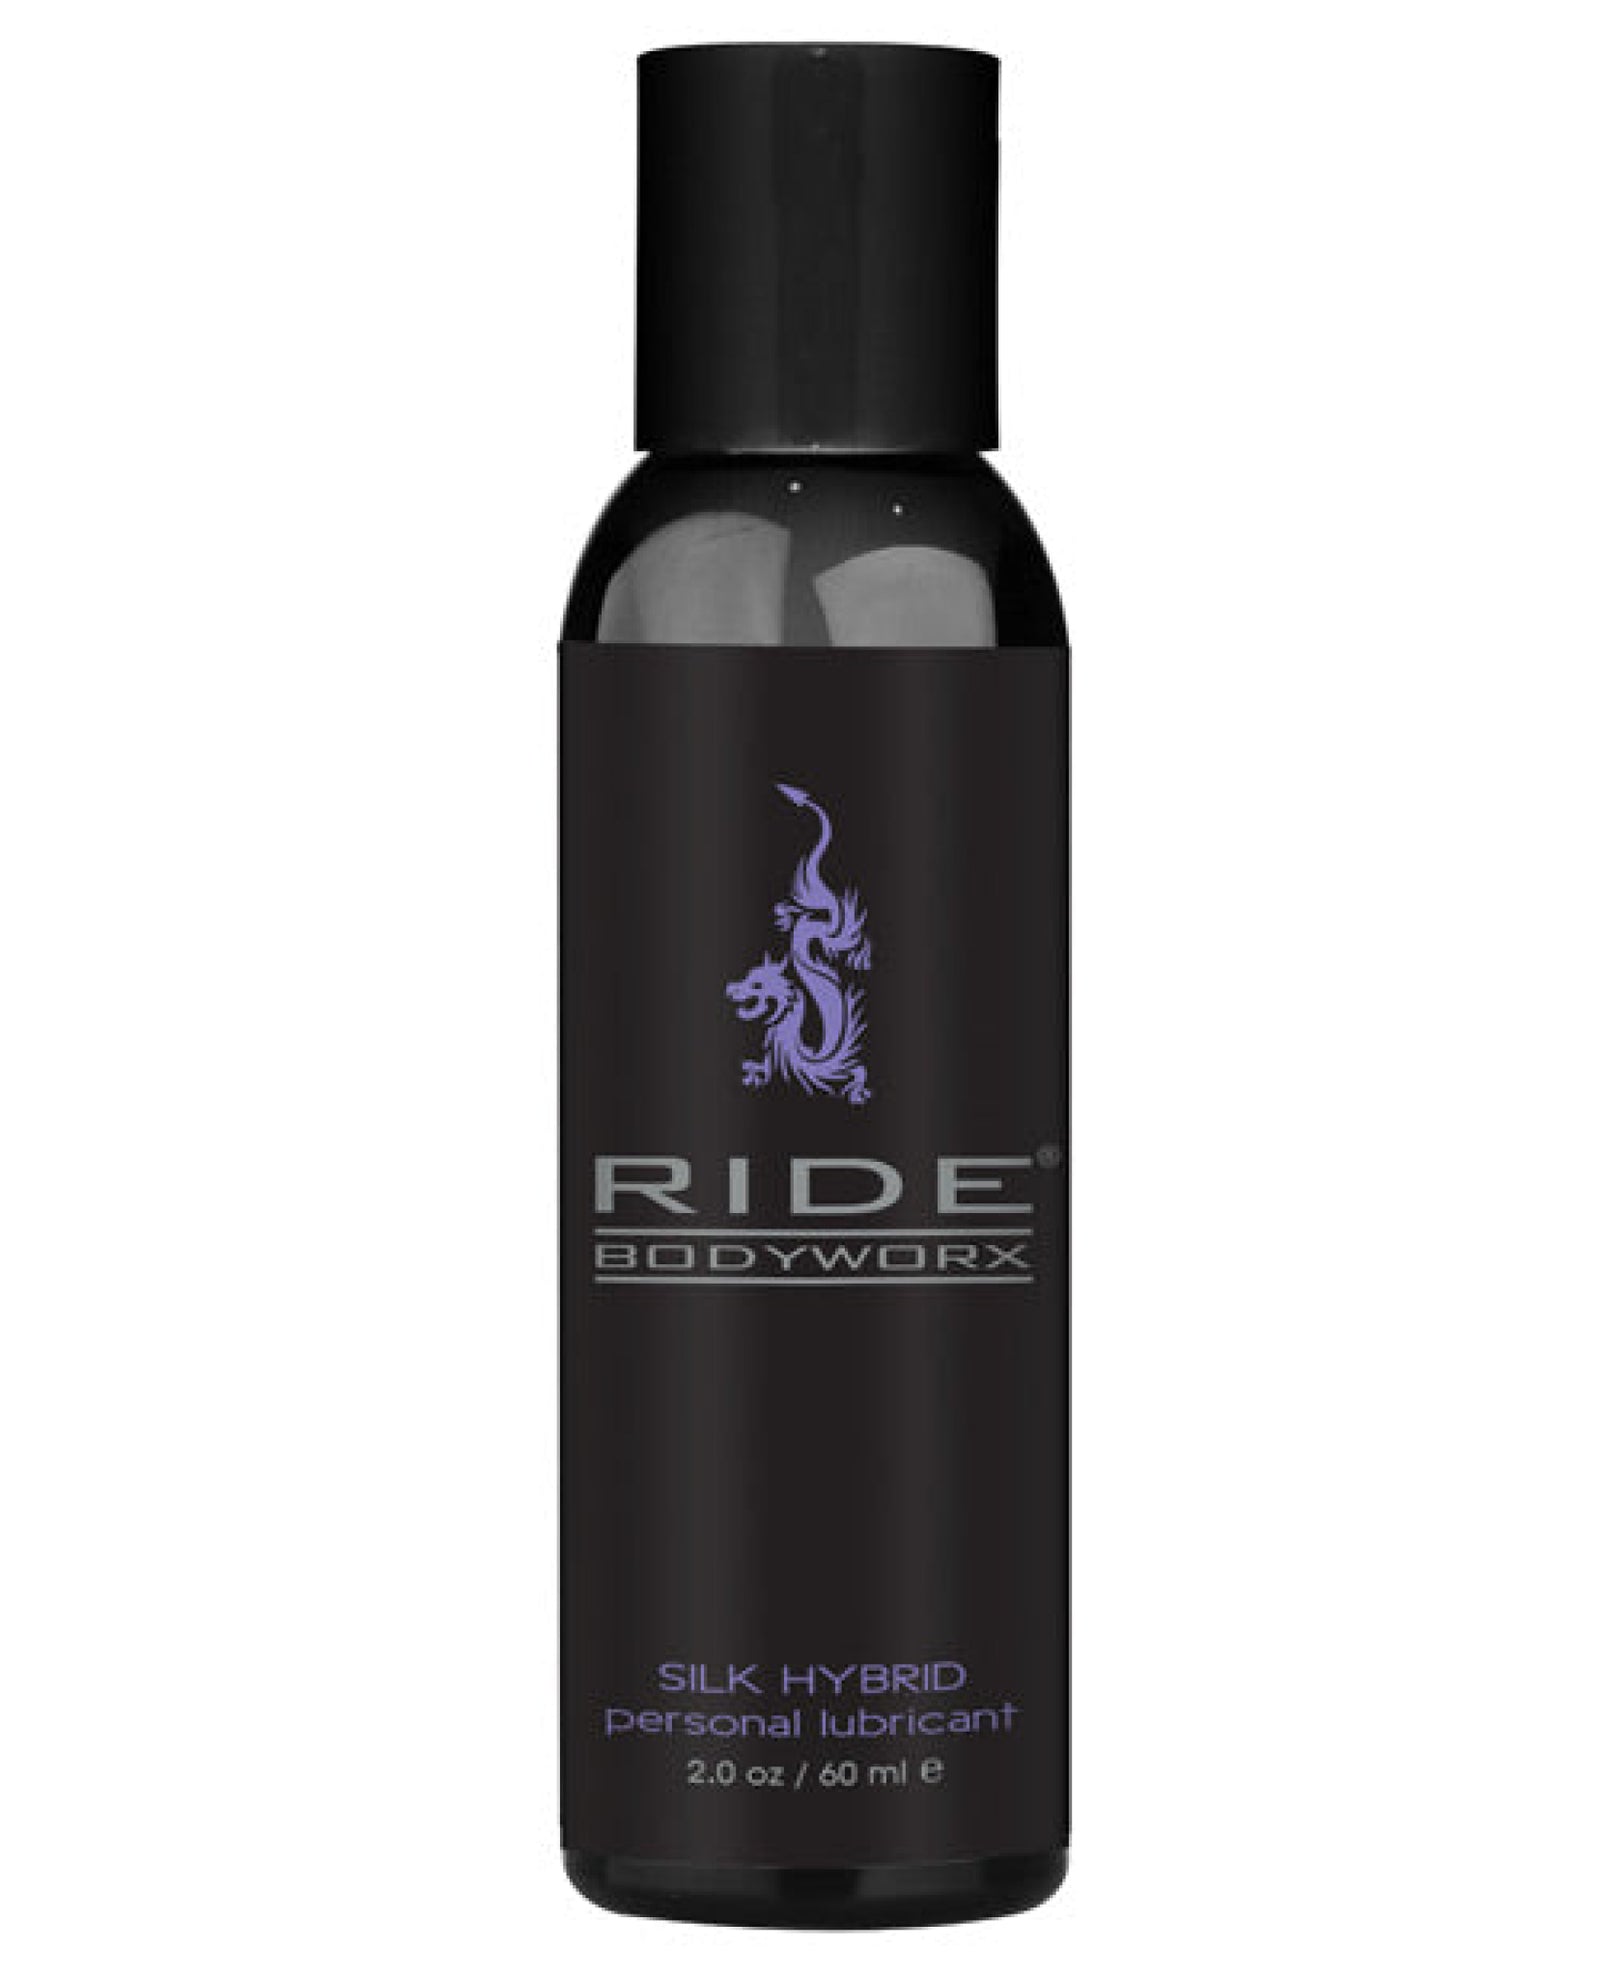 Ride Bodyworx Silk Hybrid Lubricant Ride